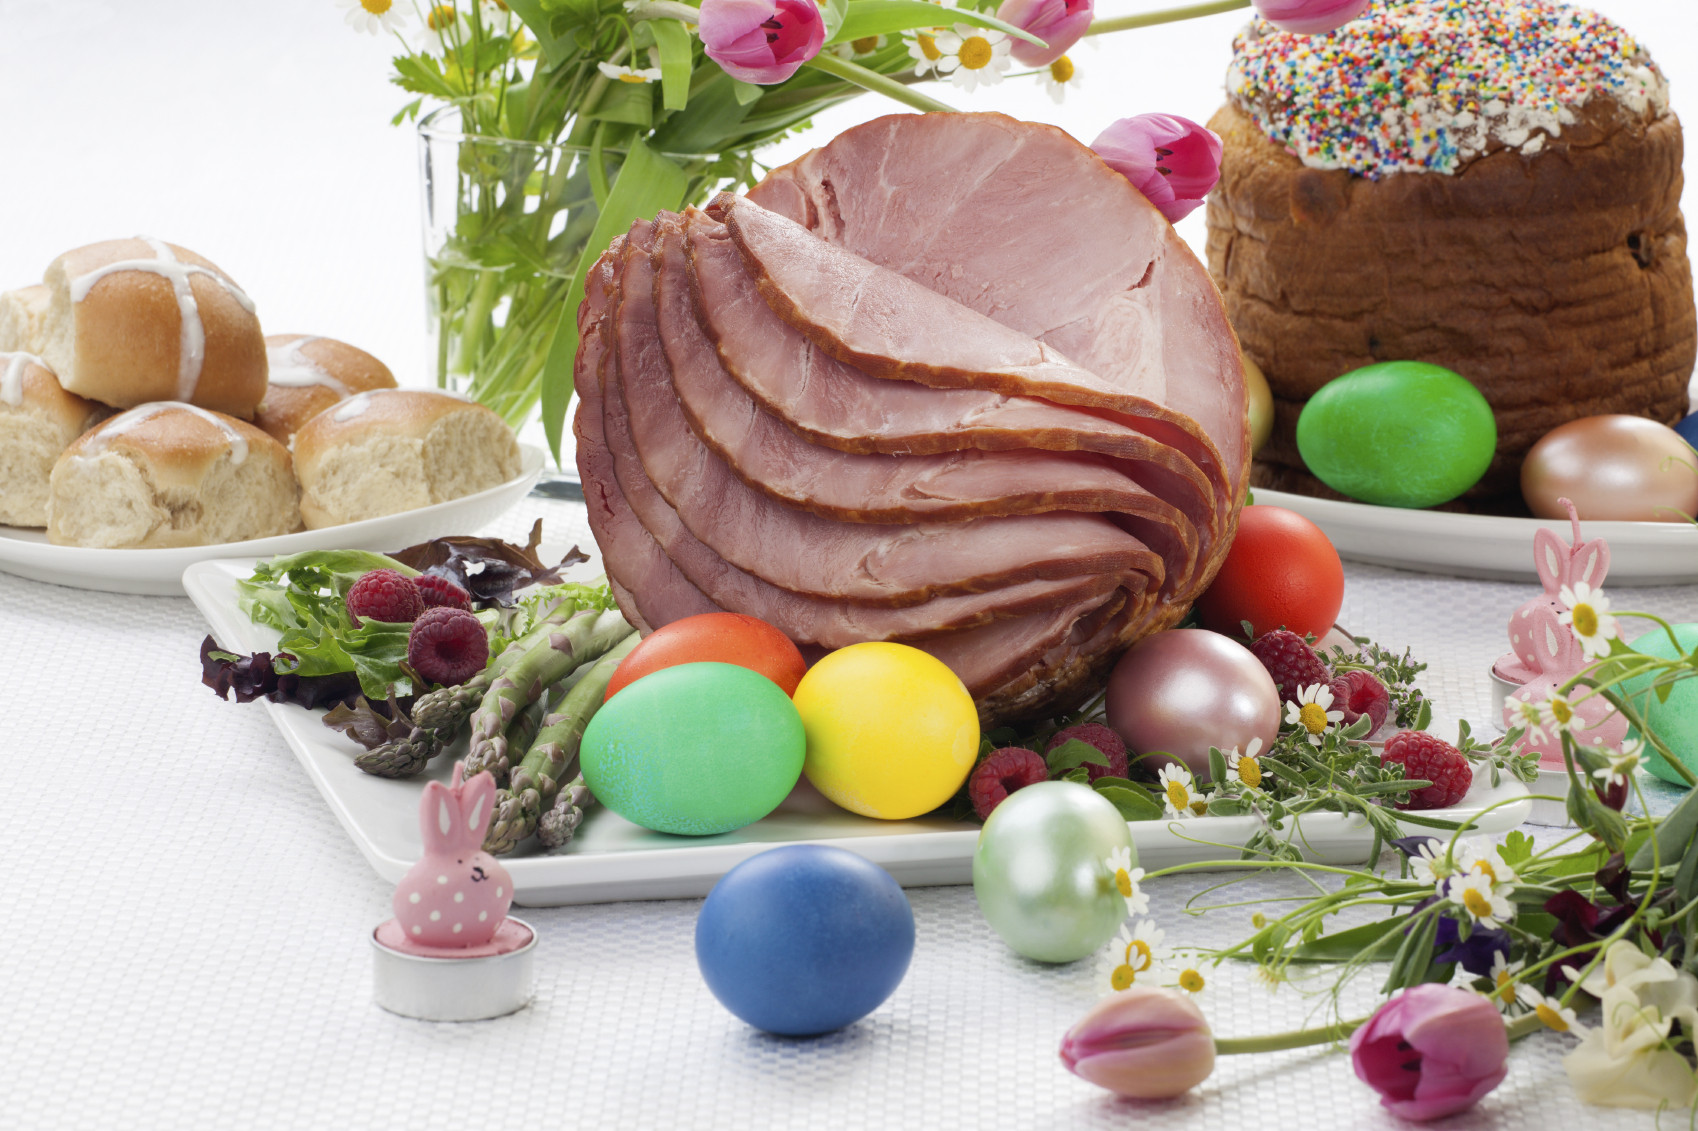 Restaurant For Easter Dinner
 Tips For Making An Easter Ham